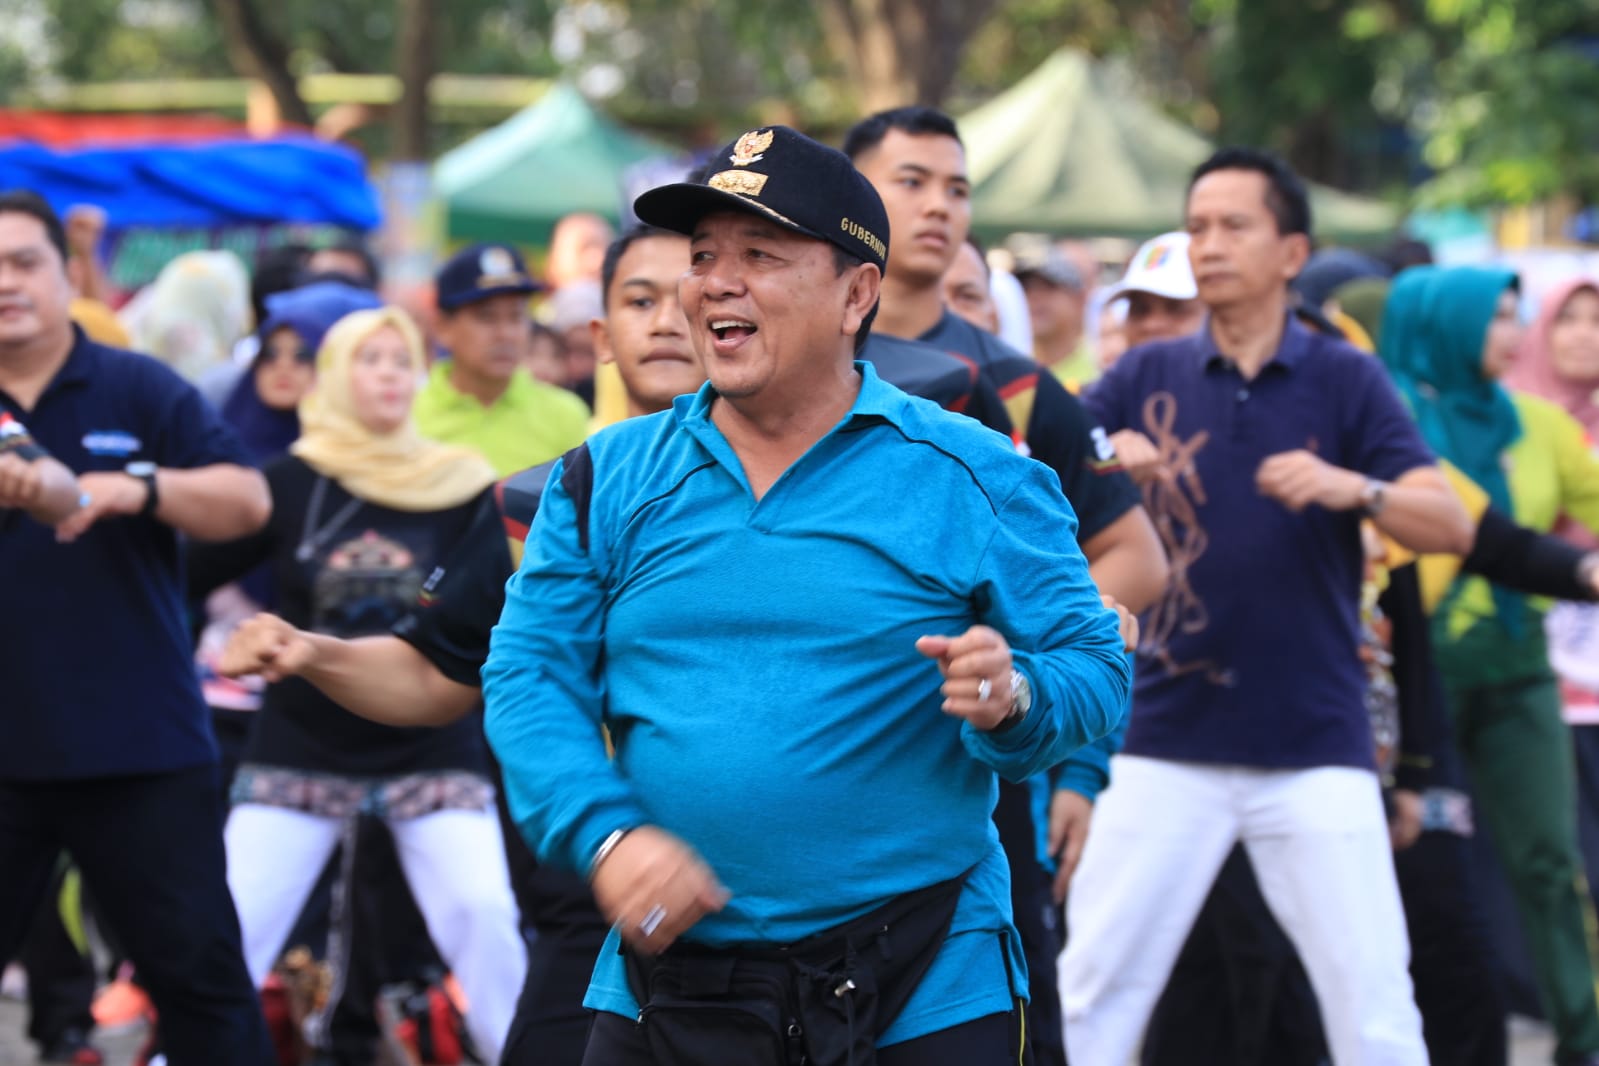 Pemeritah Provinsi Lampung Gelar Senam Bersama dalam Rangkaian Peringatan HUT ke-59 Provinsi Lampung